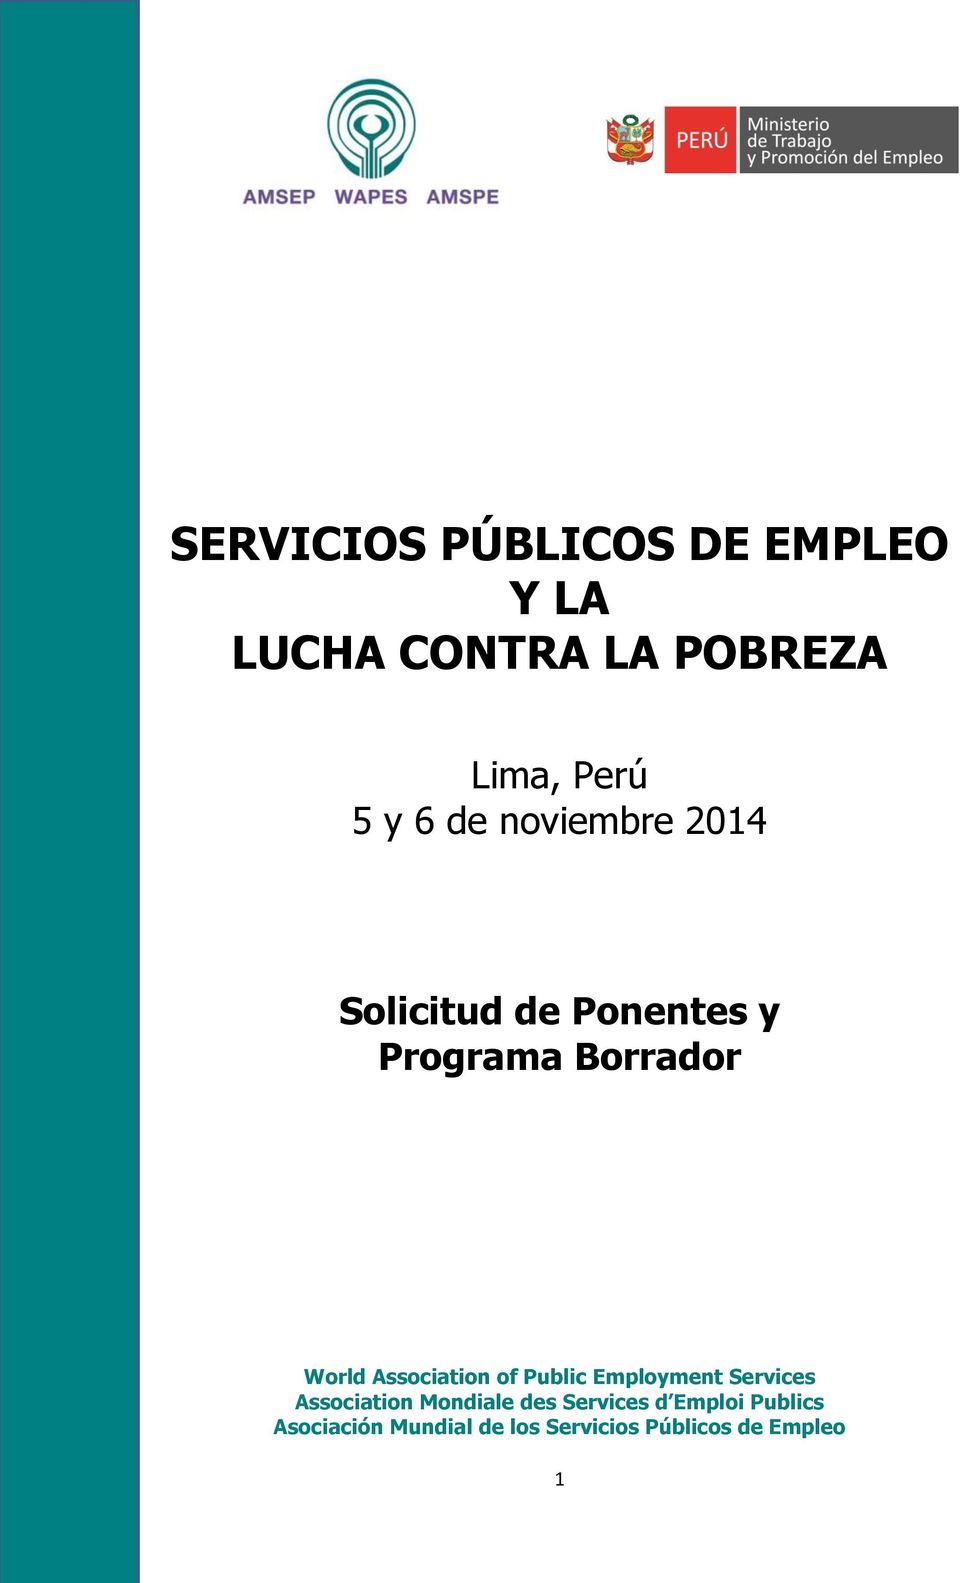 Association of Public Employment Services Association Mondiale des